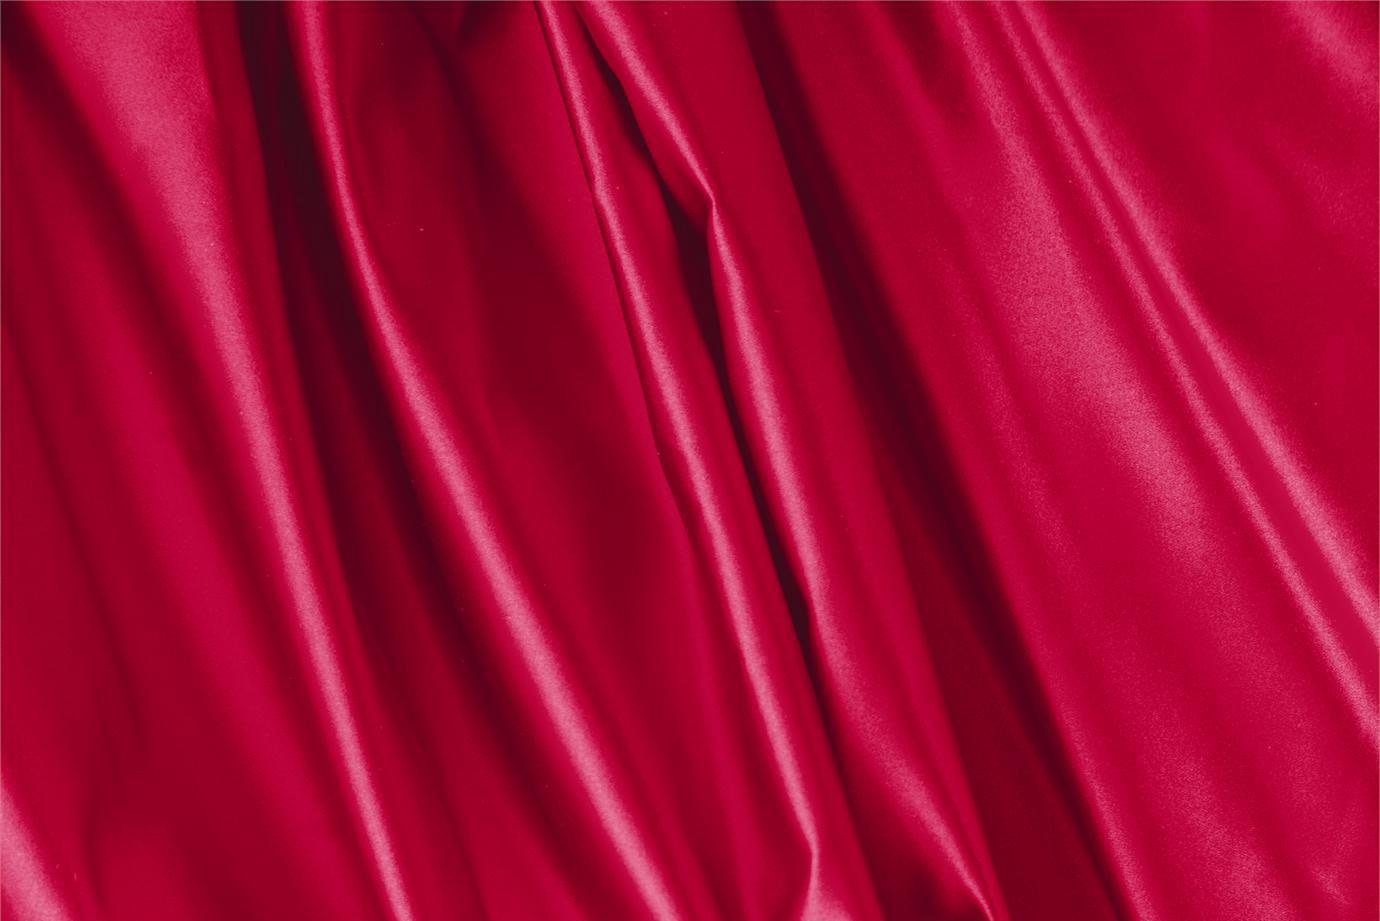 Tessuto Duchesse Rosso Rubino in Seta per Abbigliamento UN000057